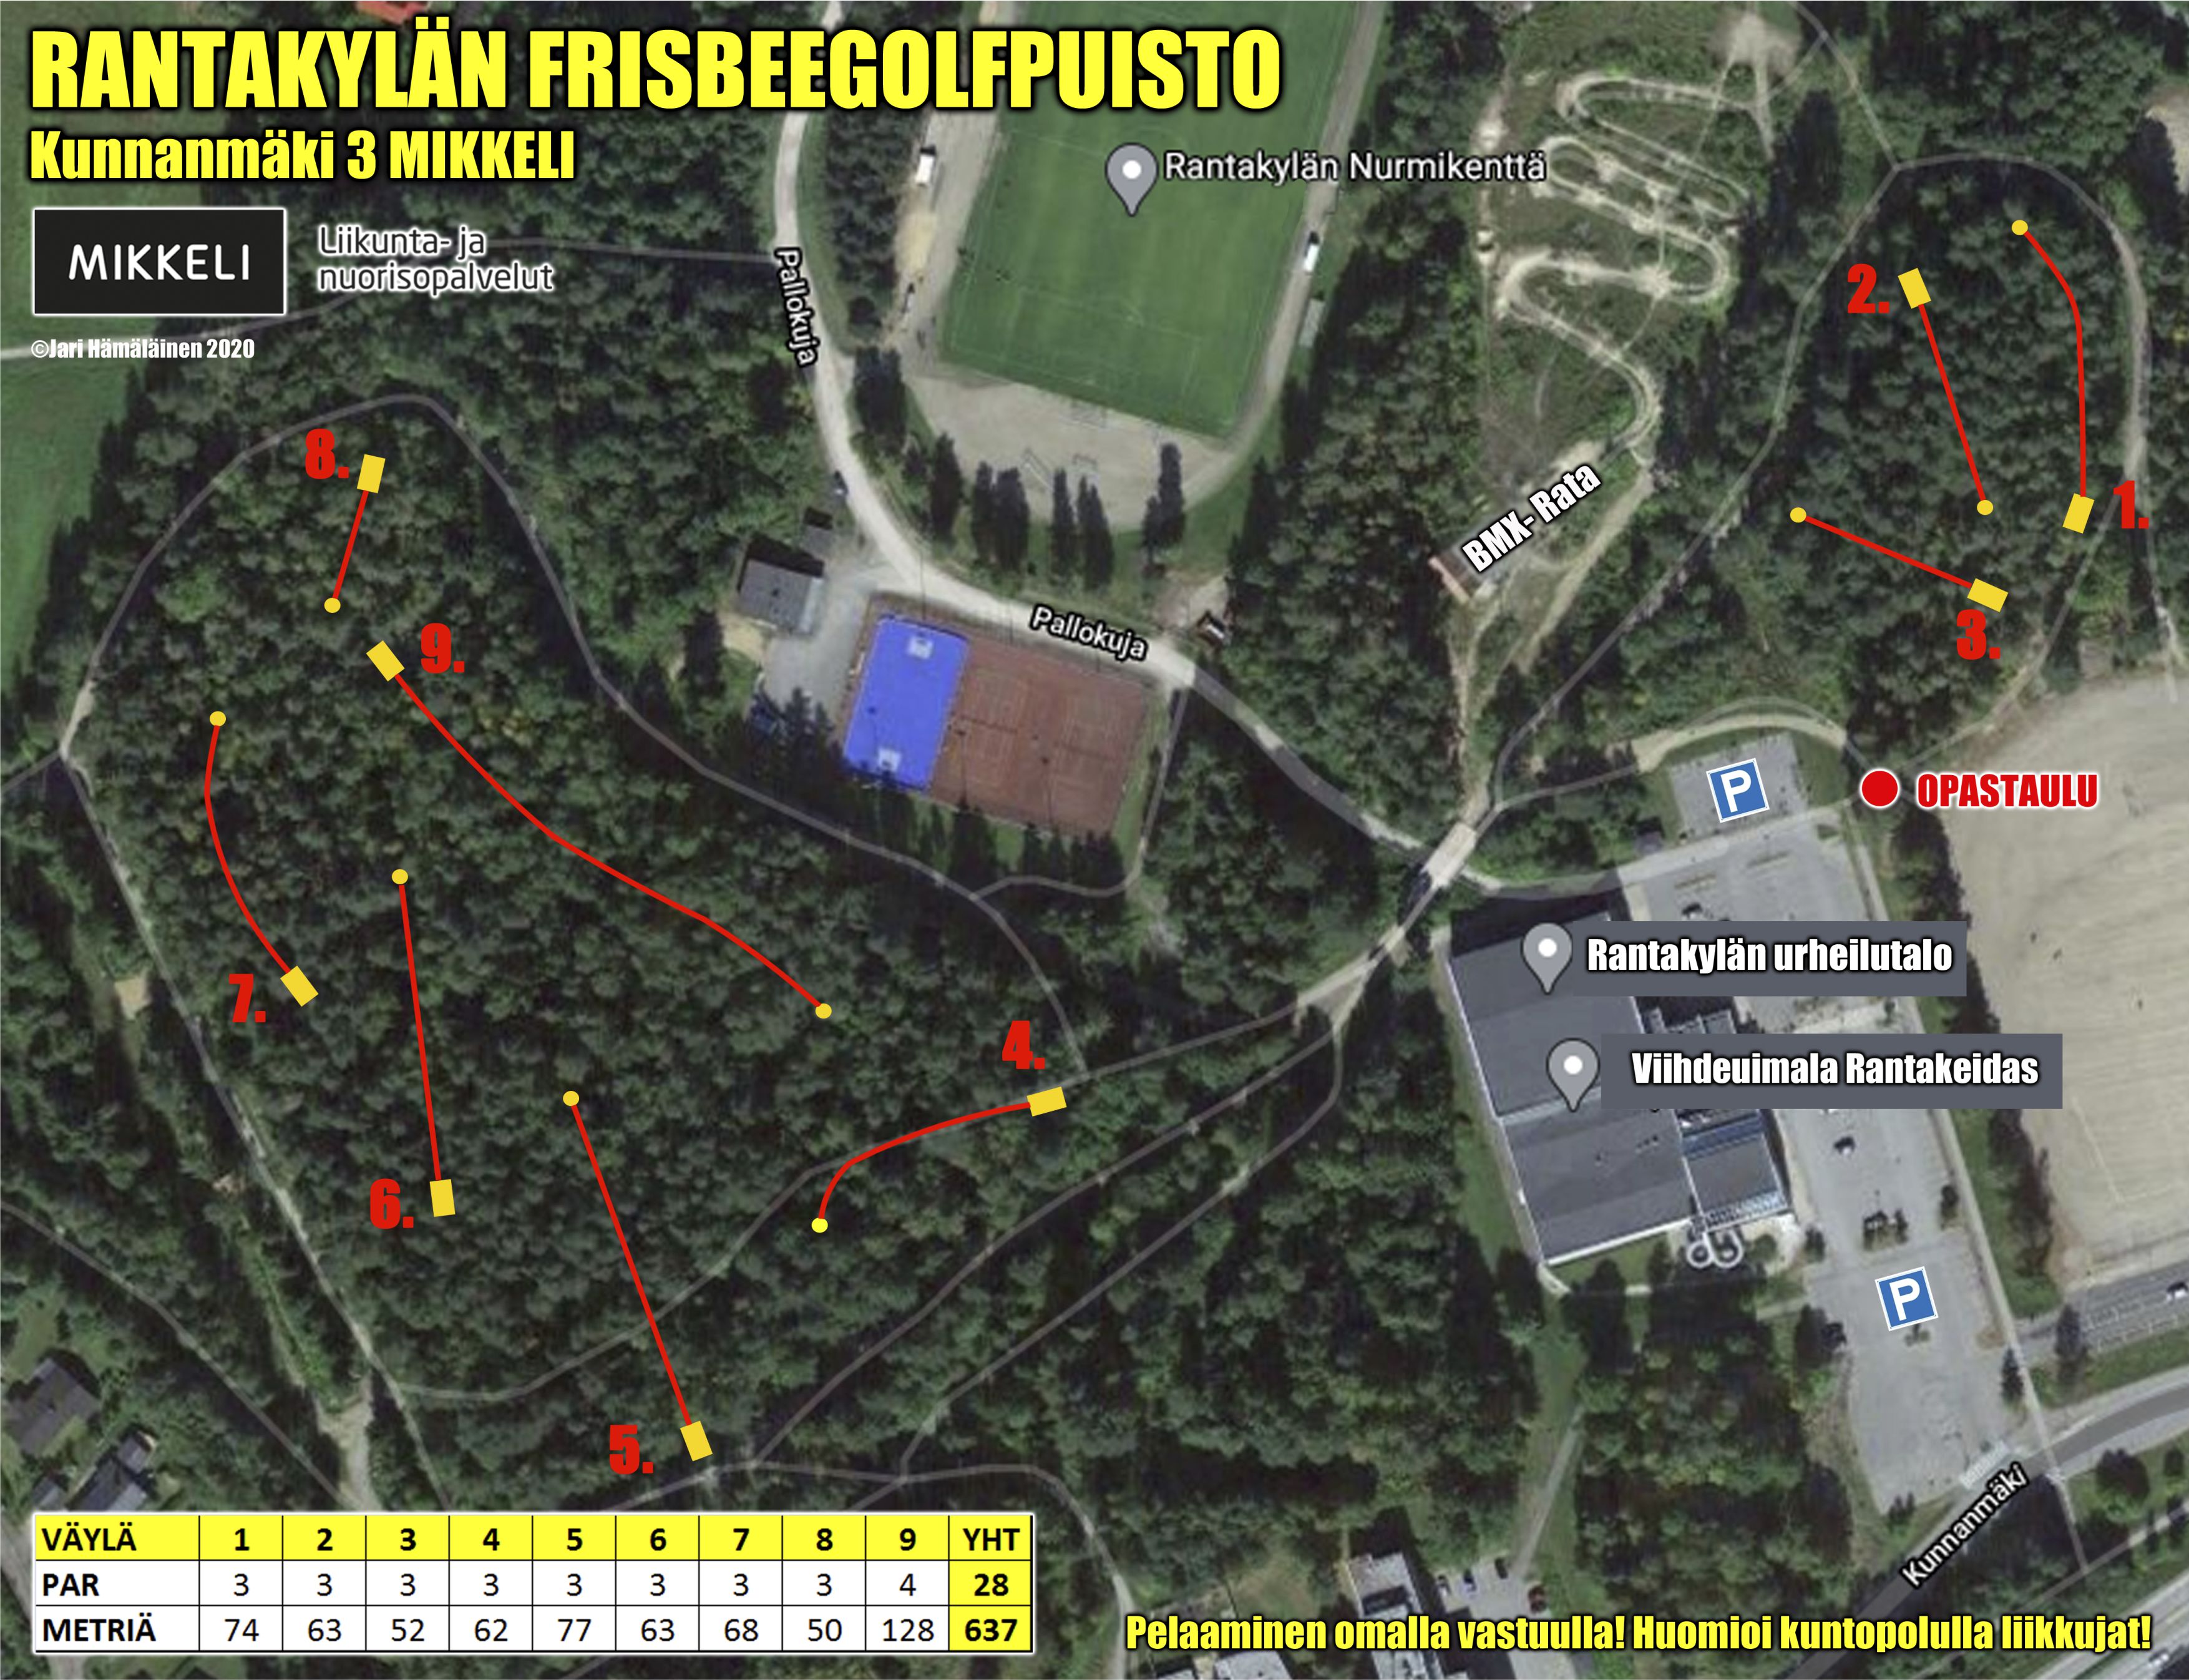 pallokuja 6 helsinki kartta Rantakylän frisbeegolfpuisto   Radat   Frisbeegolfradat.fi